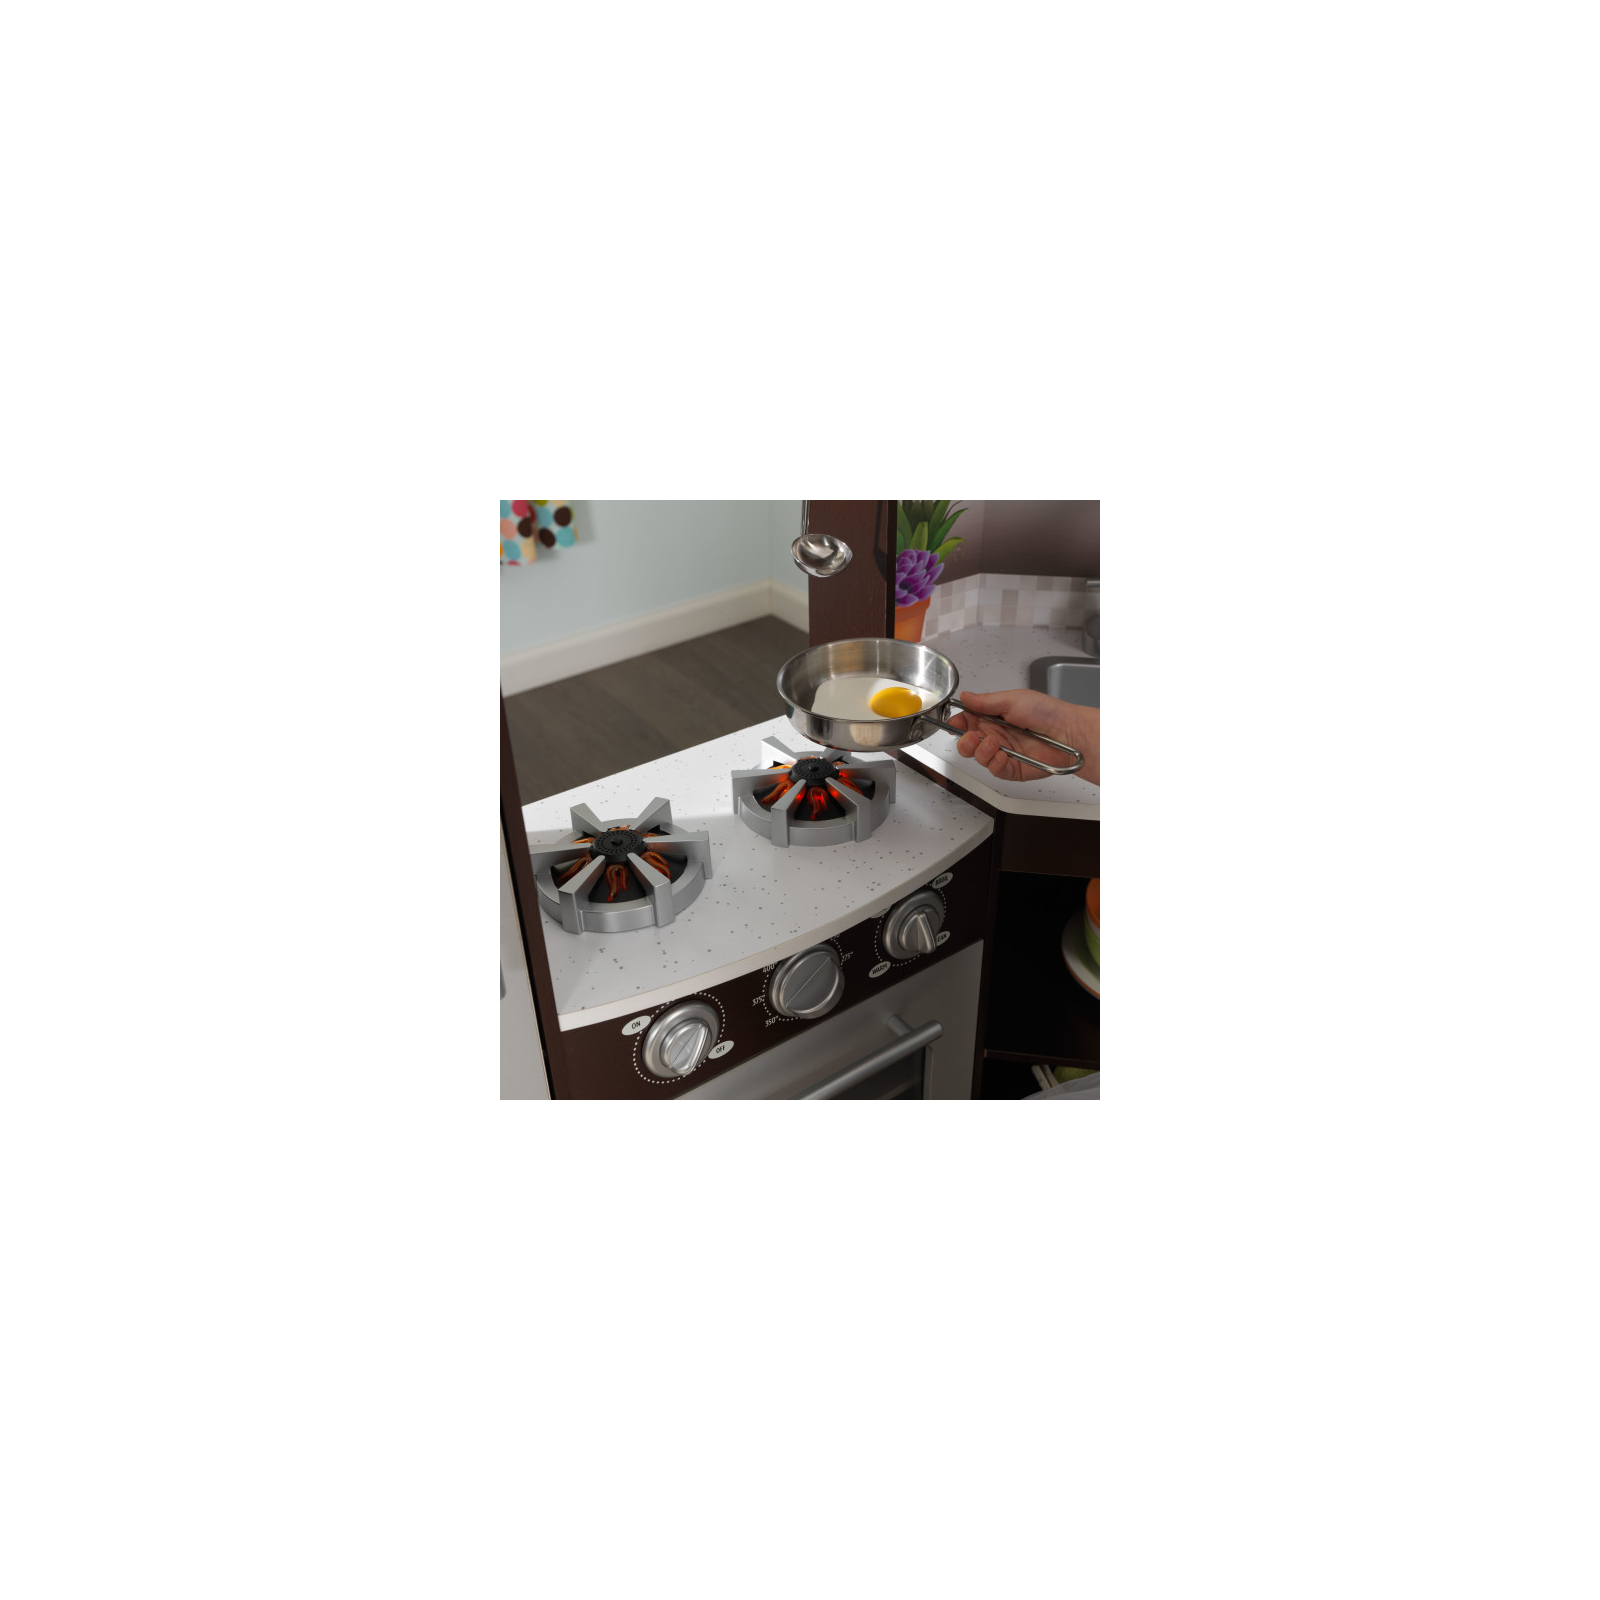 Игровой набор KidKraft кухня Эспрессо угловая с эффектами (53365) изображение 4